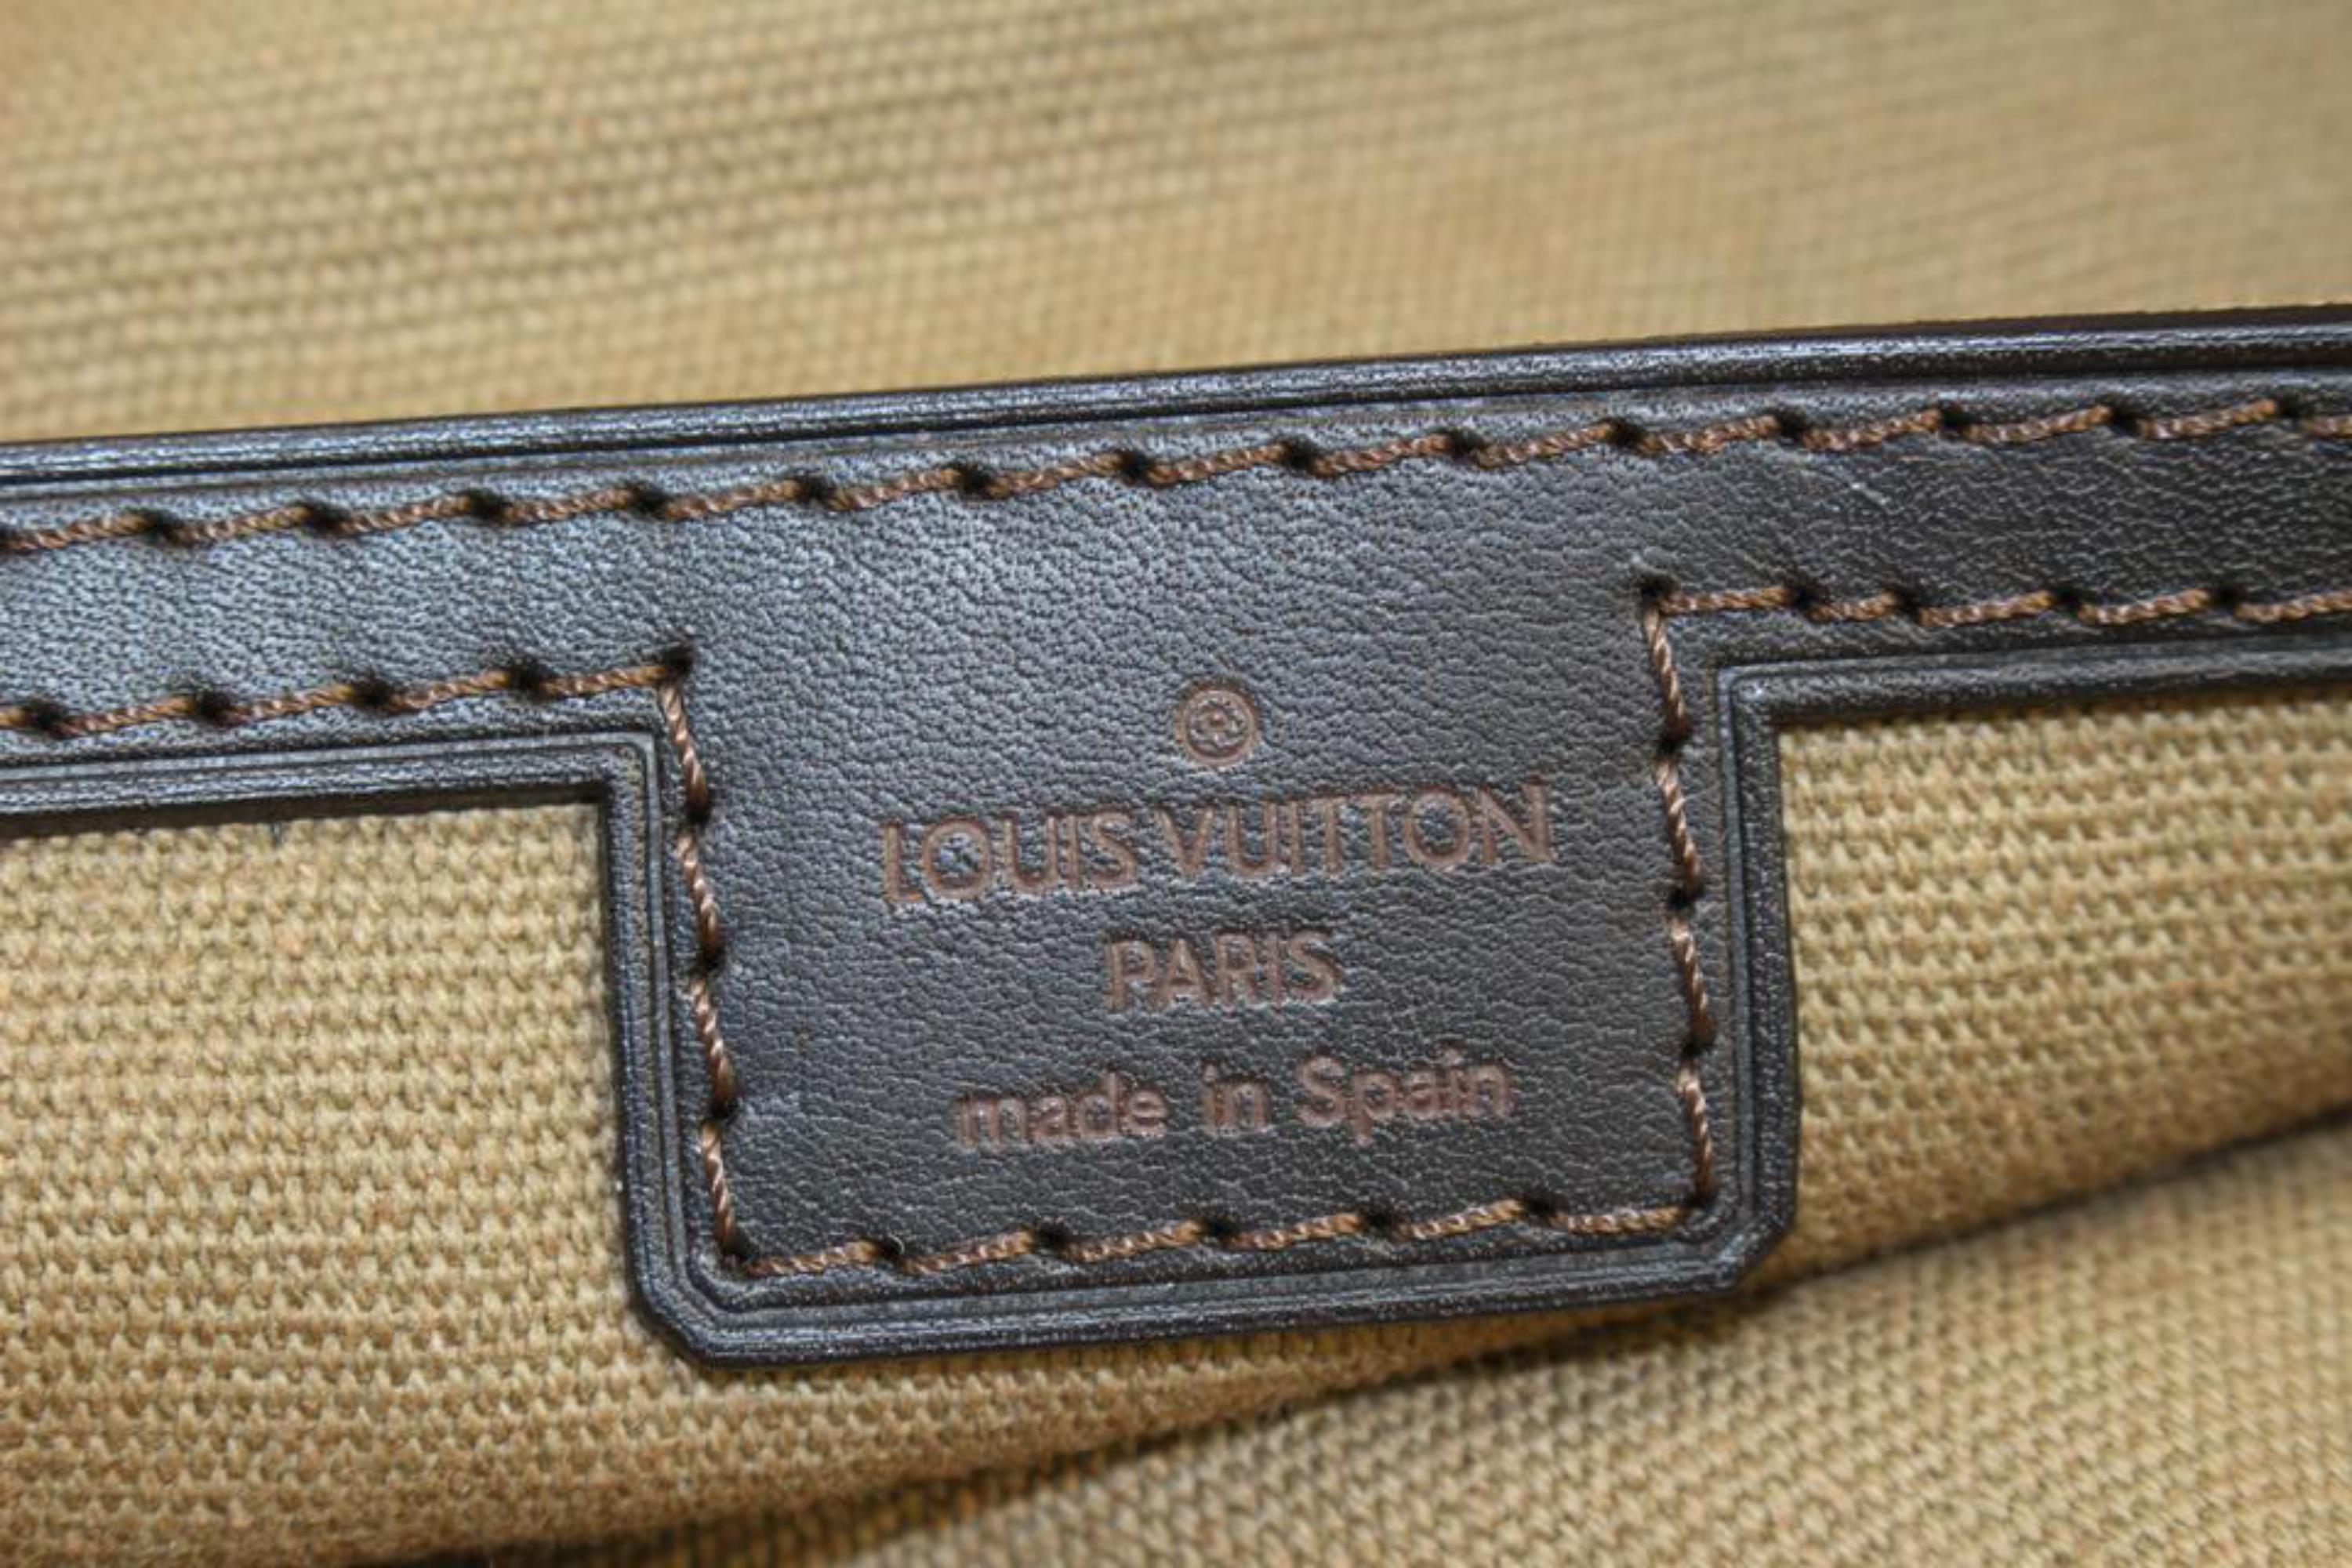 Louis Vuitton - Grand sac en cuir Utah marron foncé Plat Messenger Bag s214lv83
Code de date/Numéro de série : LM0063
Fabriqué en : Espagne
Mesures : Longueur :  13.5